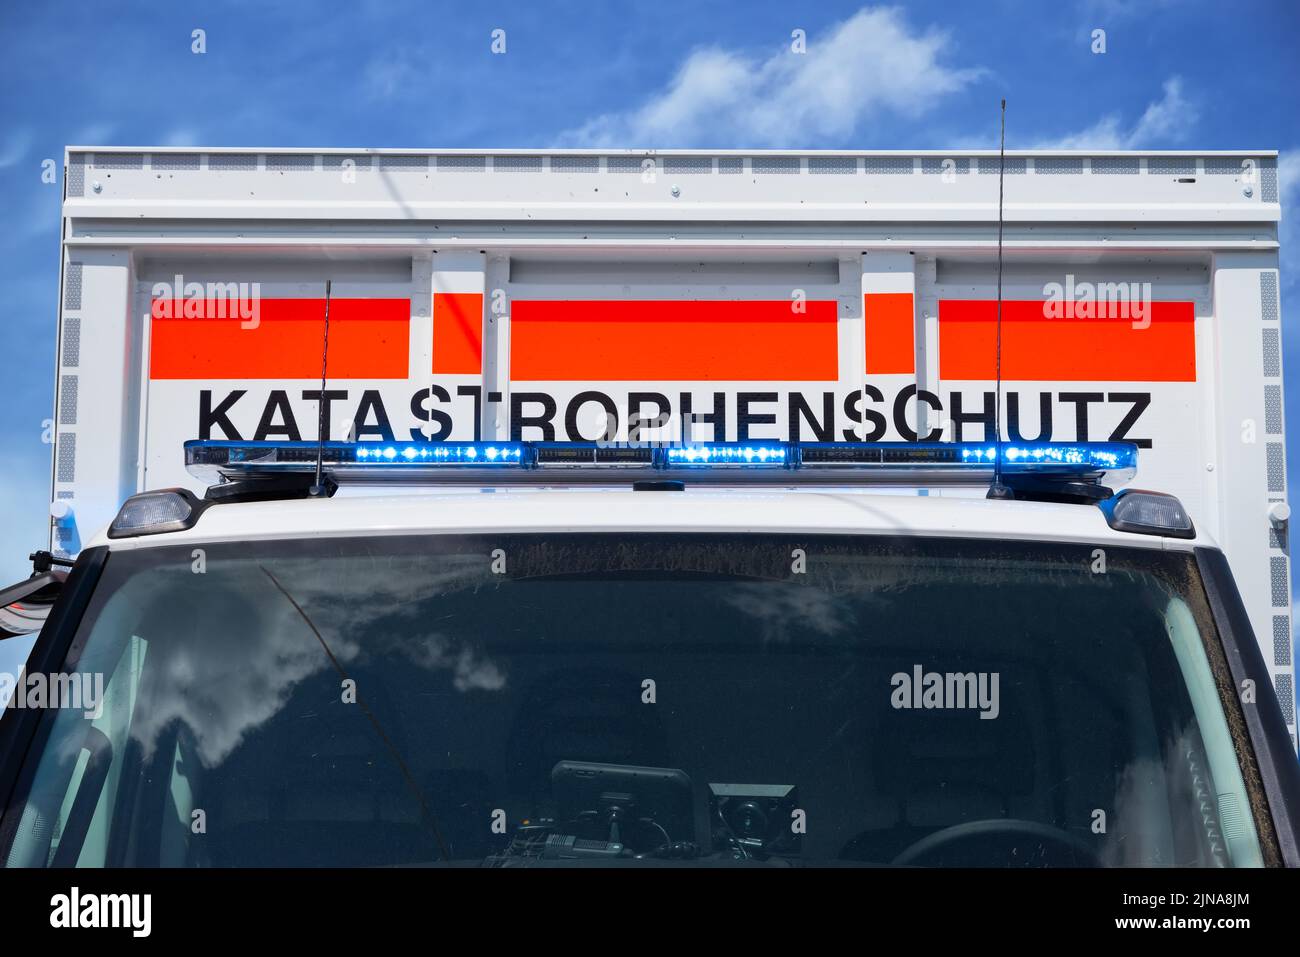 Veicolo di emergenza con la scritta protezione da disastri – Katastrotrophenschutz Einsatzfahrzeug Foto Stock